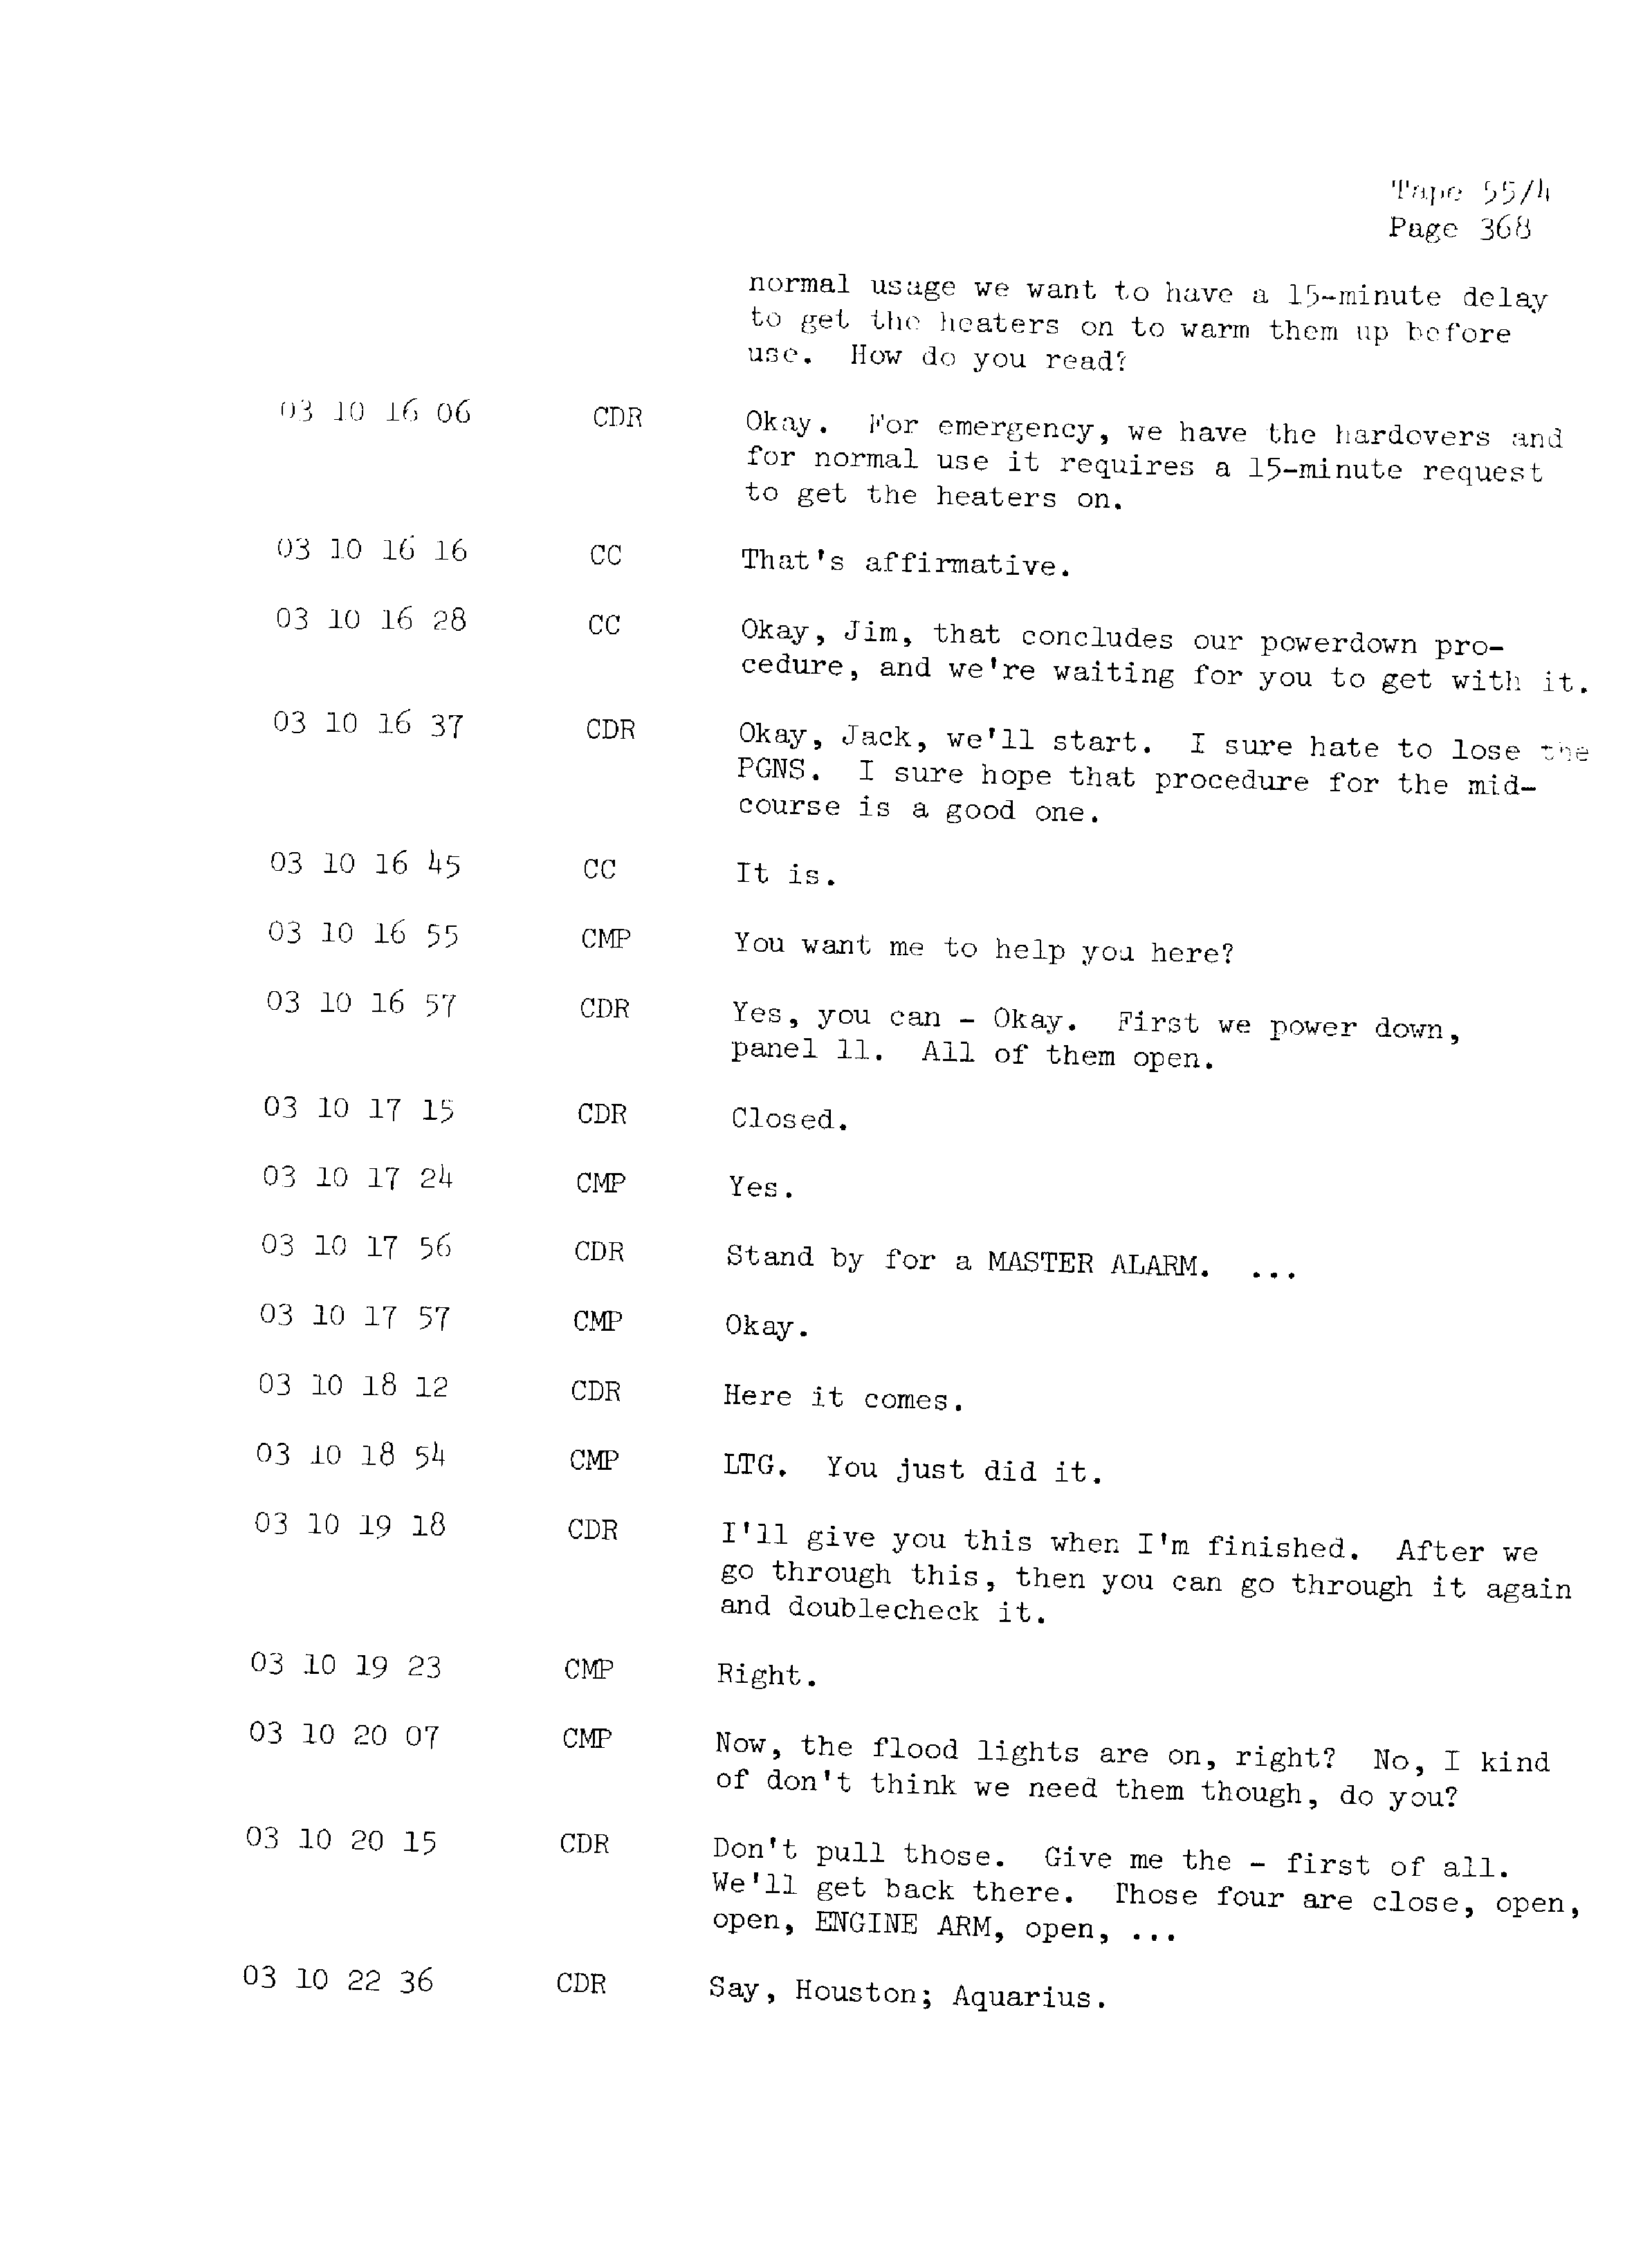 Page 375 of Apollo 13’s original transcript